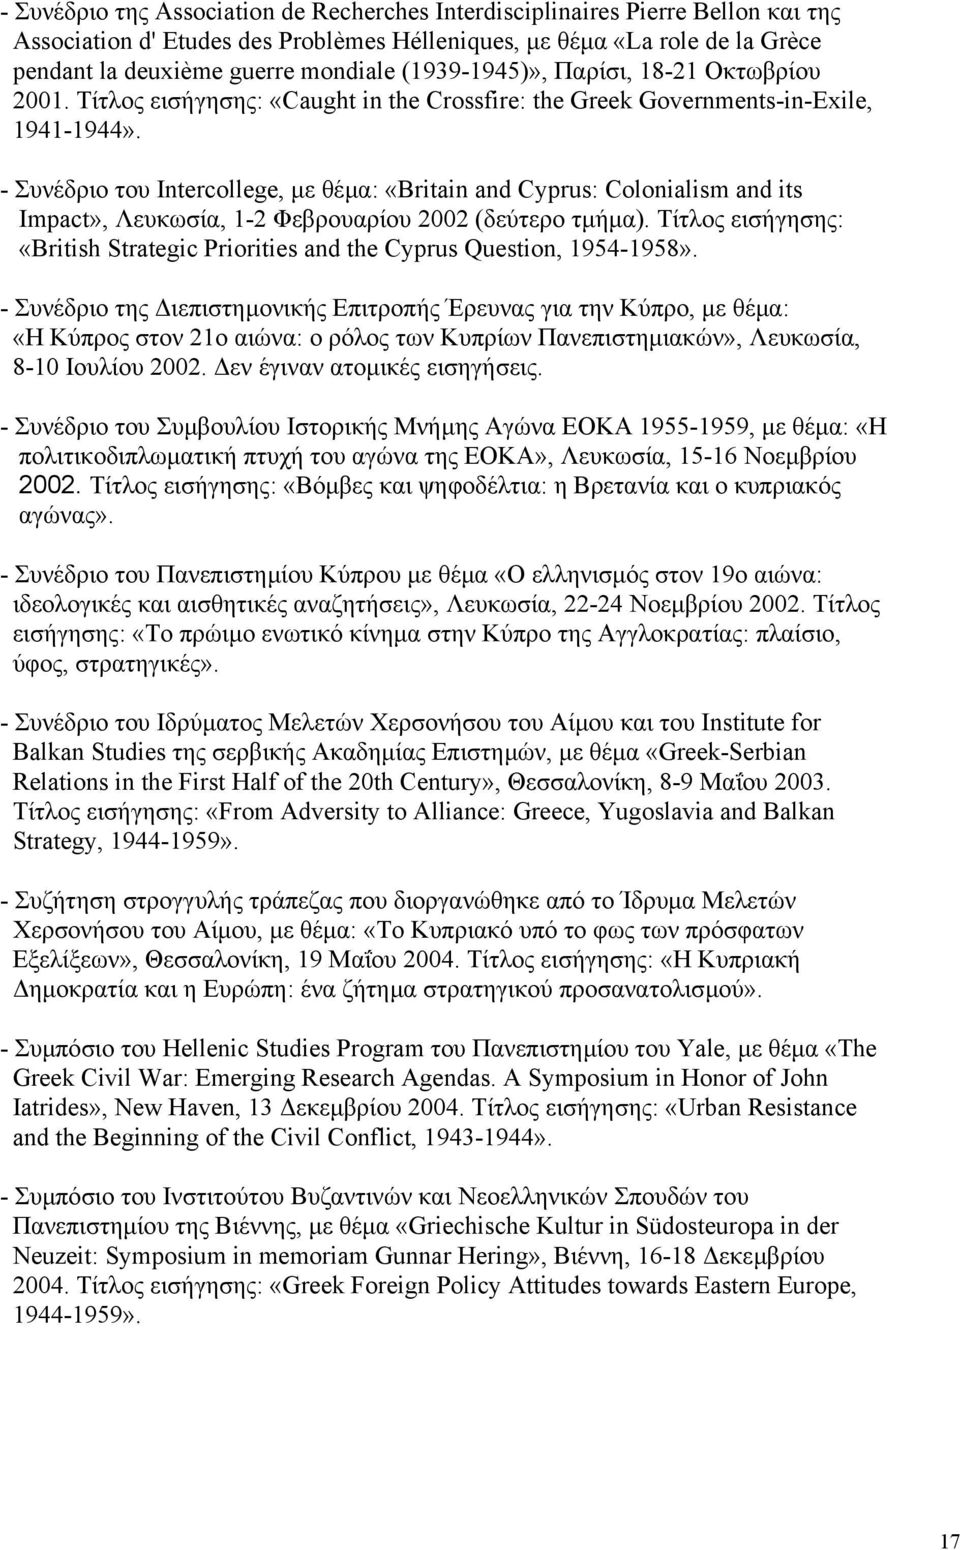 - Συνέδριο του Intercollege, µε θέµα: «Britain and Cyprus: Colonialism and its Impact», Λευκωσία, 1-2 Φεβρουαρίου 2002 (δεύτερο τµήµα).